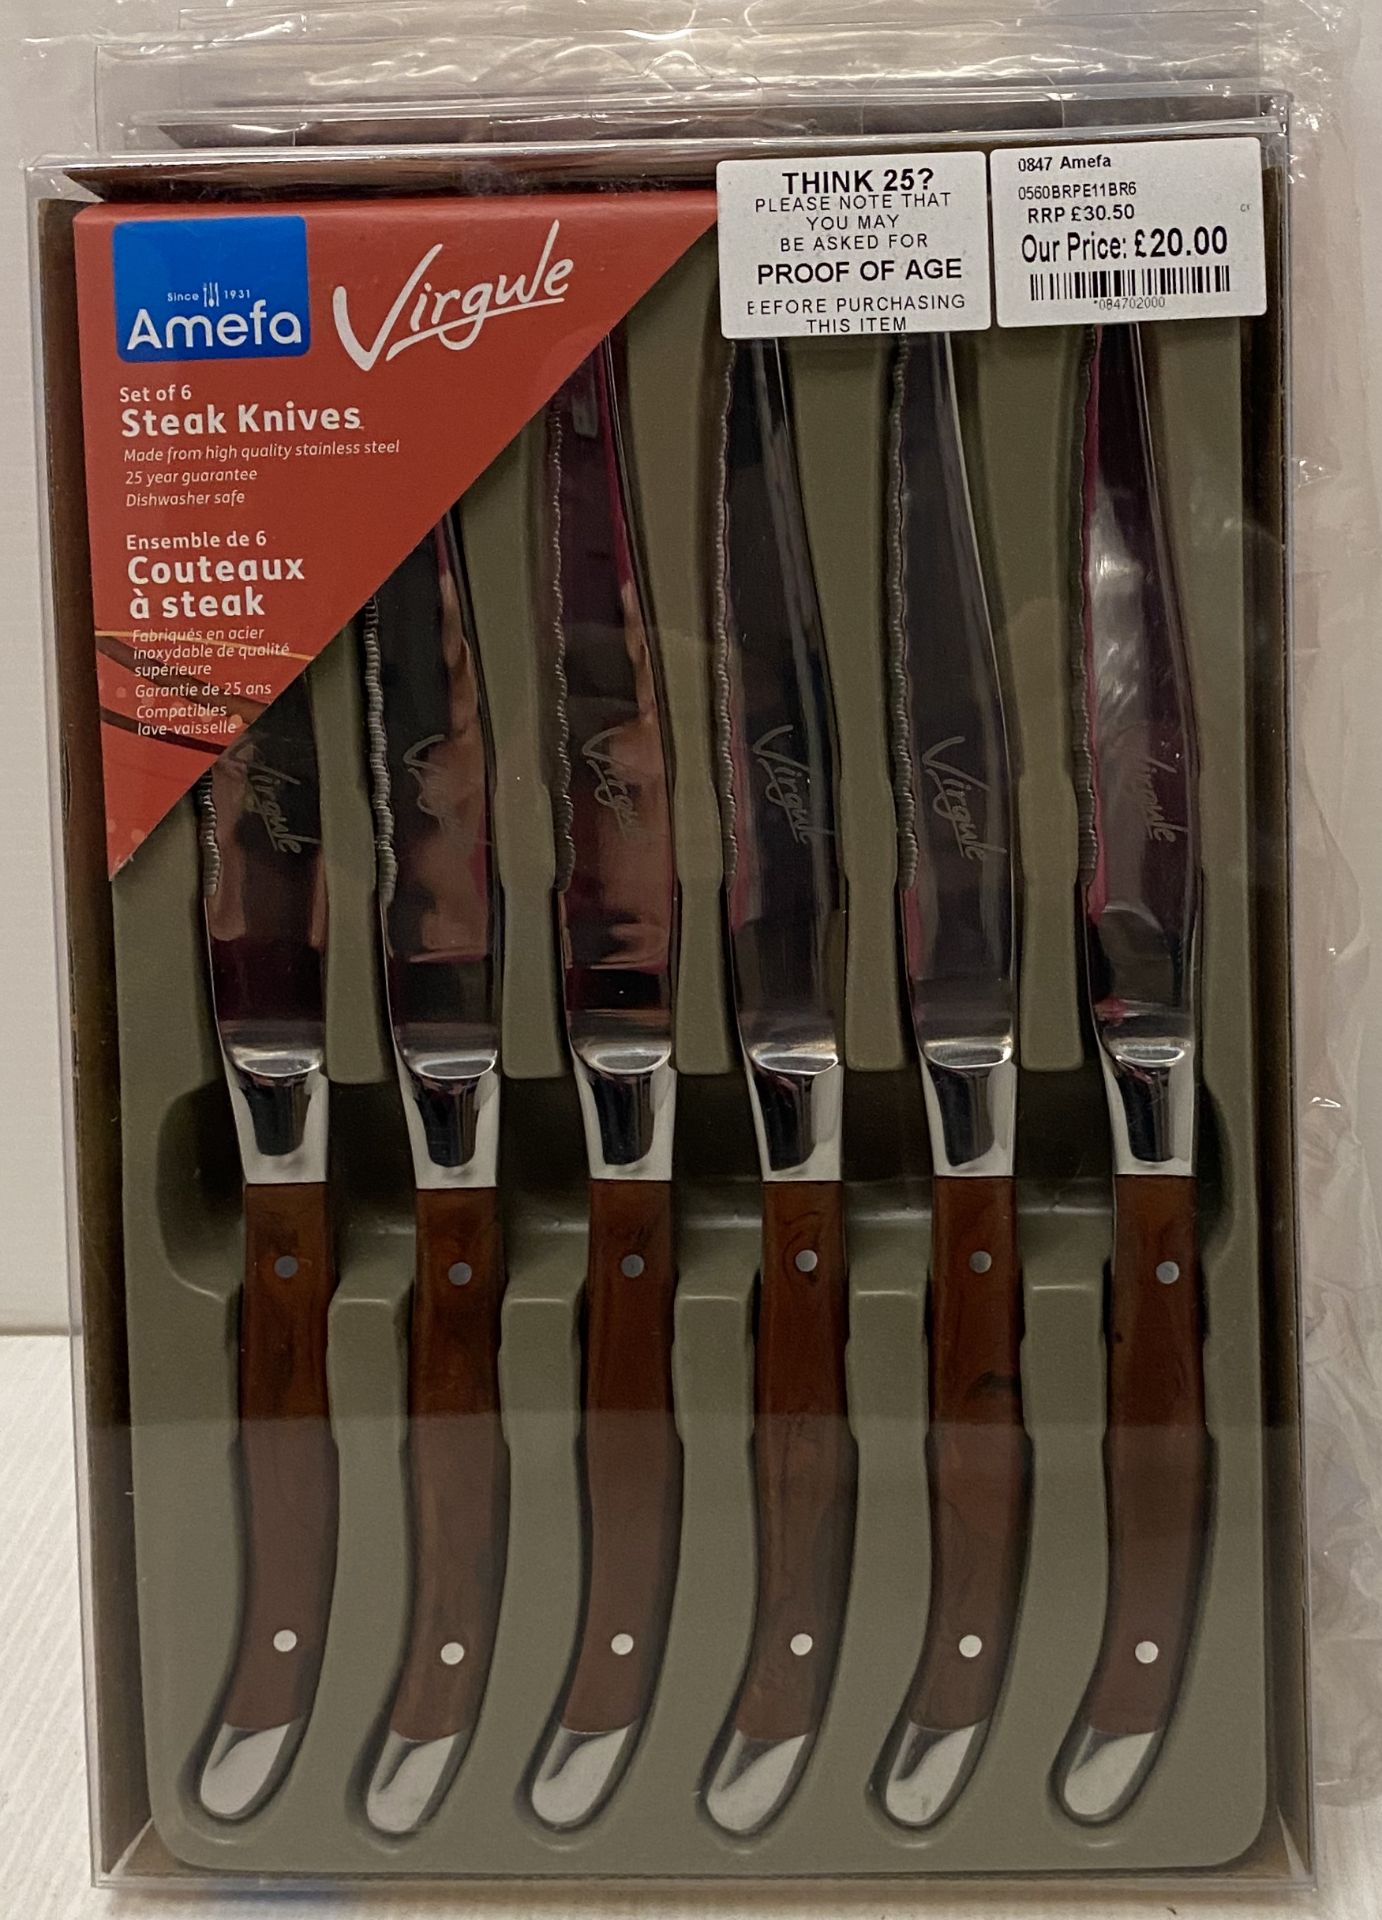 3 x Amefa Virgule sets of 6 brown handle